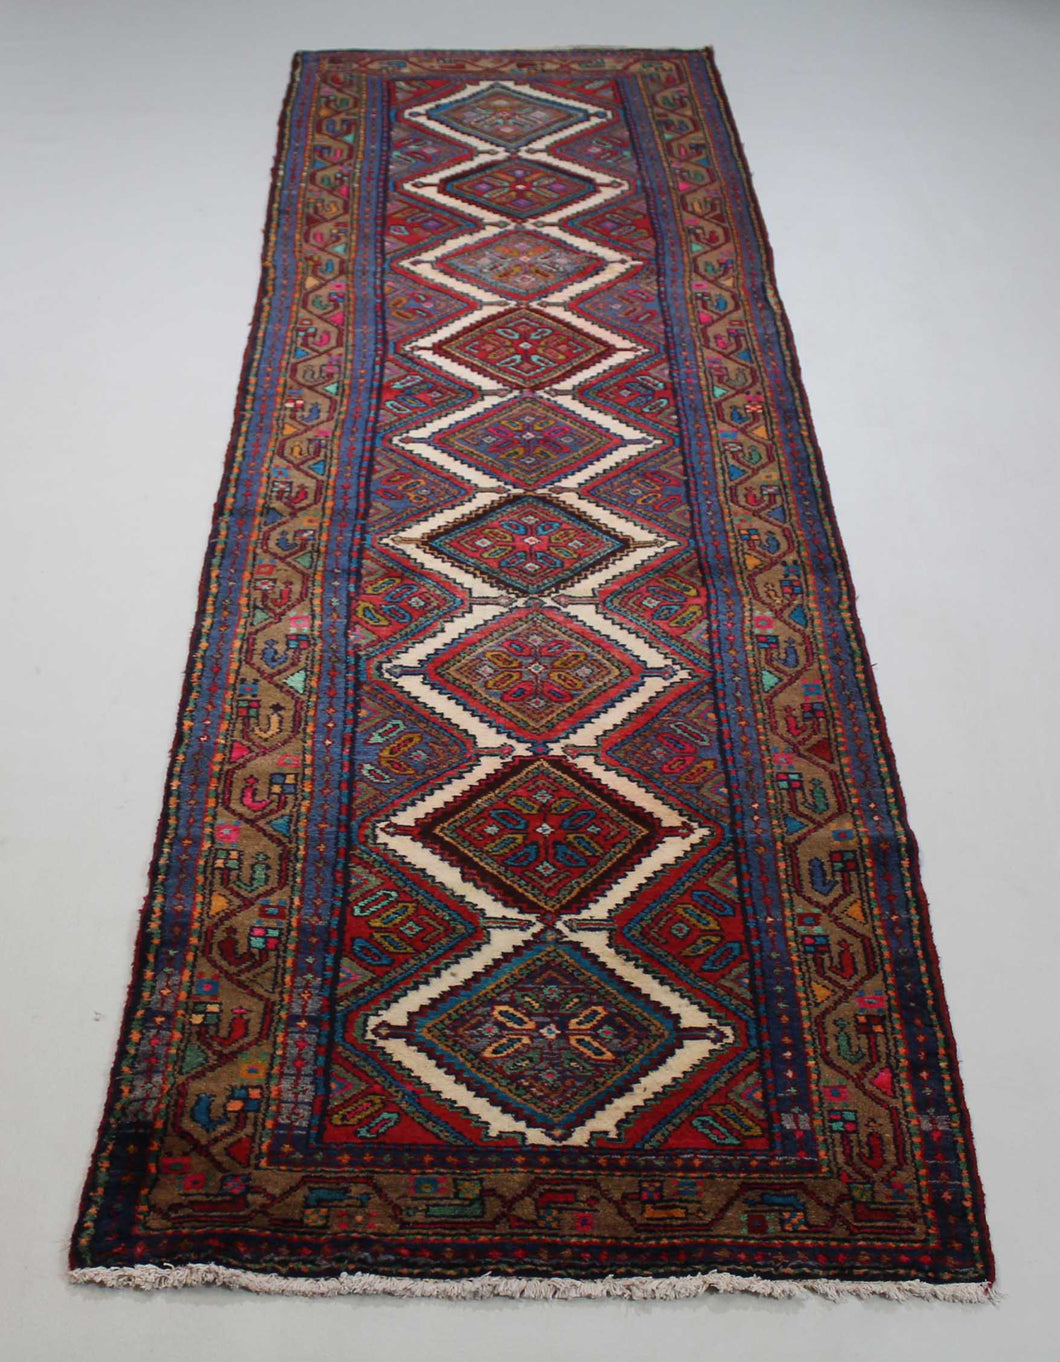 Handmade Antique, Vintage oriental wool Persian \Nahavand rug - 330 X 83 cm